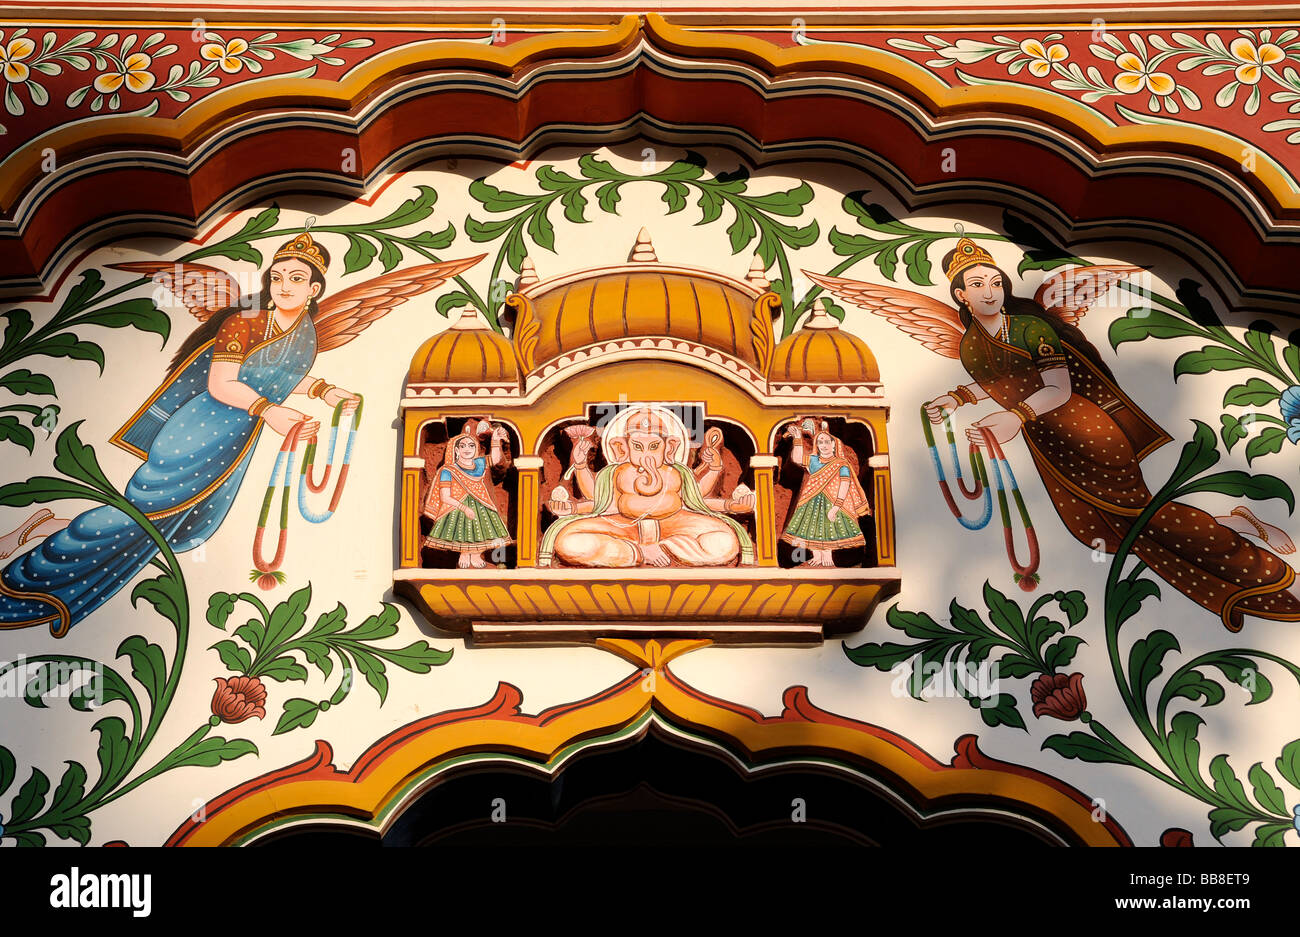 Fresque avec Ganesha, le dieu à tête d'éléphant au centre, Rajasthan, Inde du Nord, en Asie du Sud Banque D'Images